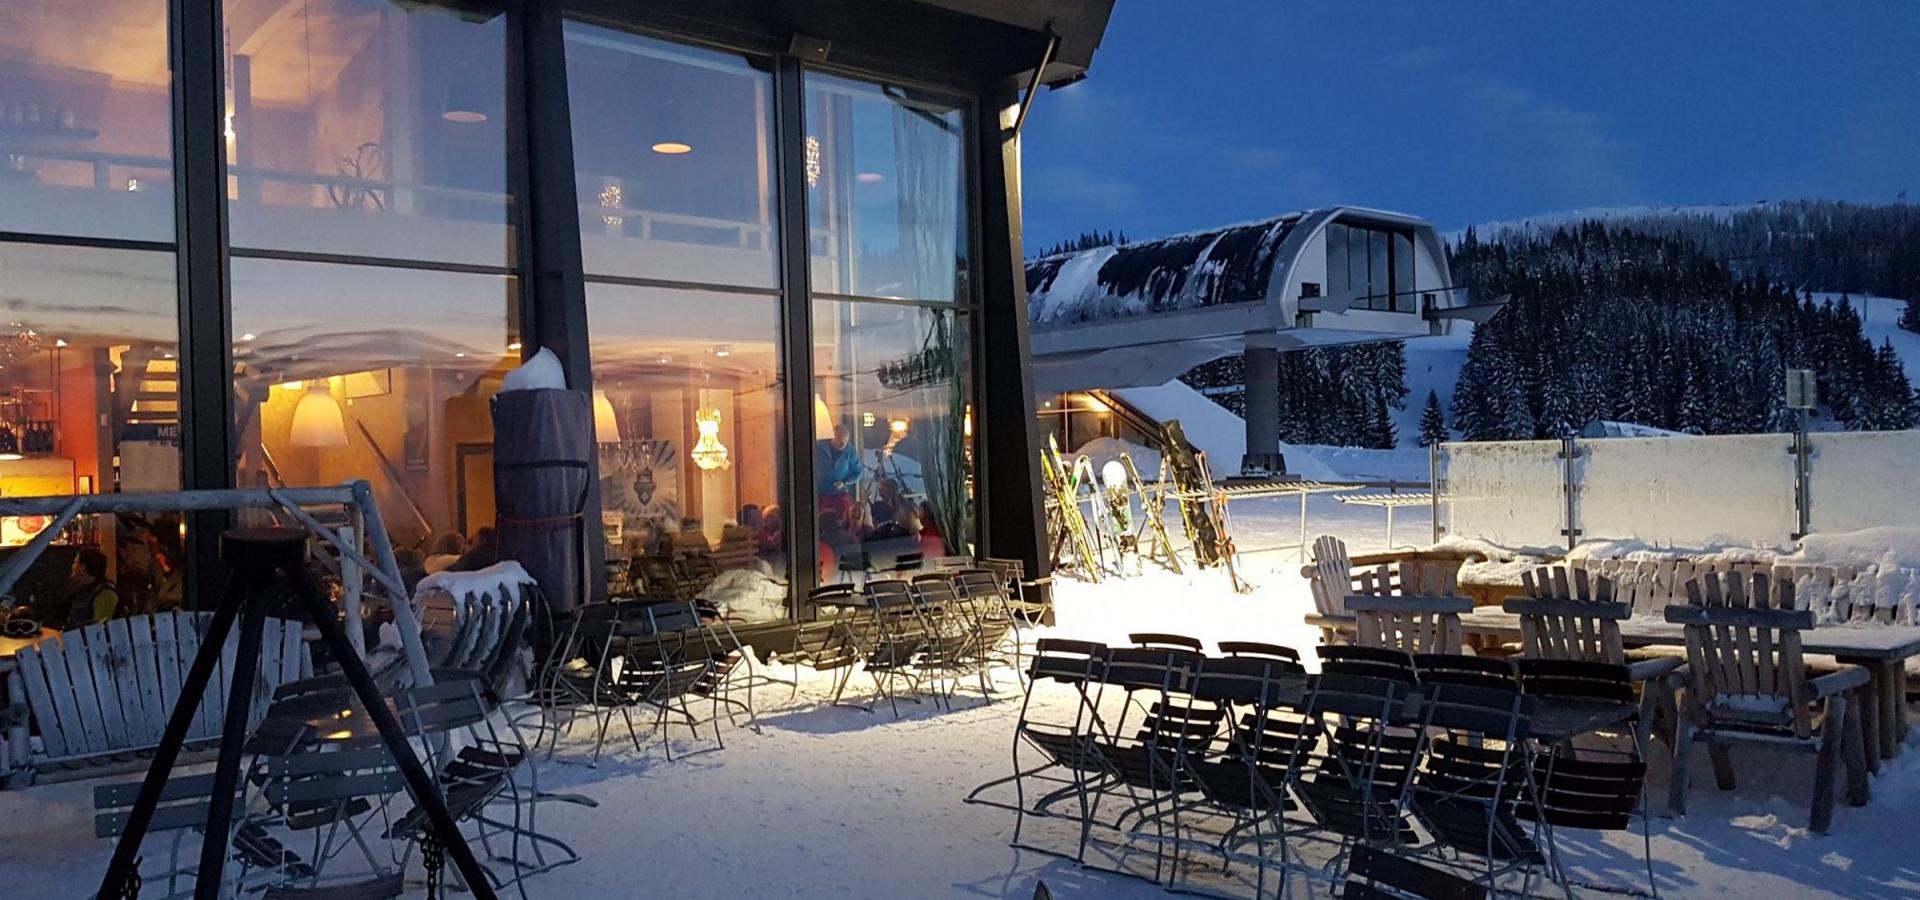 Skavlen restaurant på Hafjell